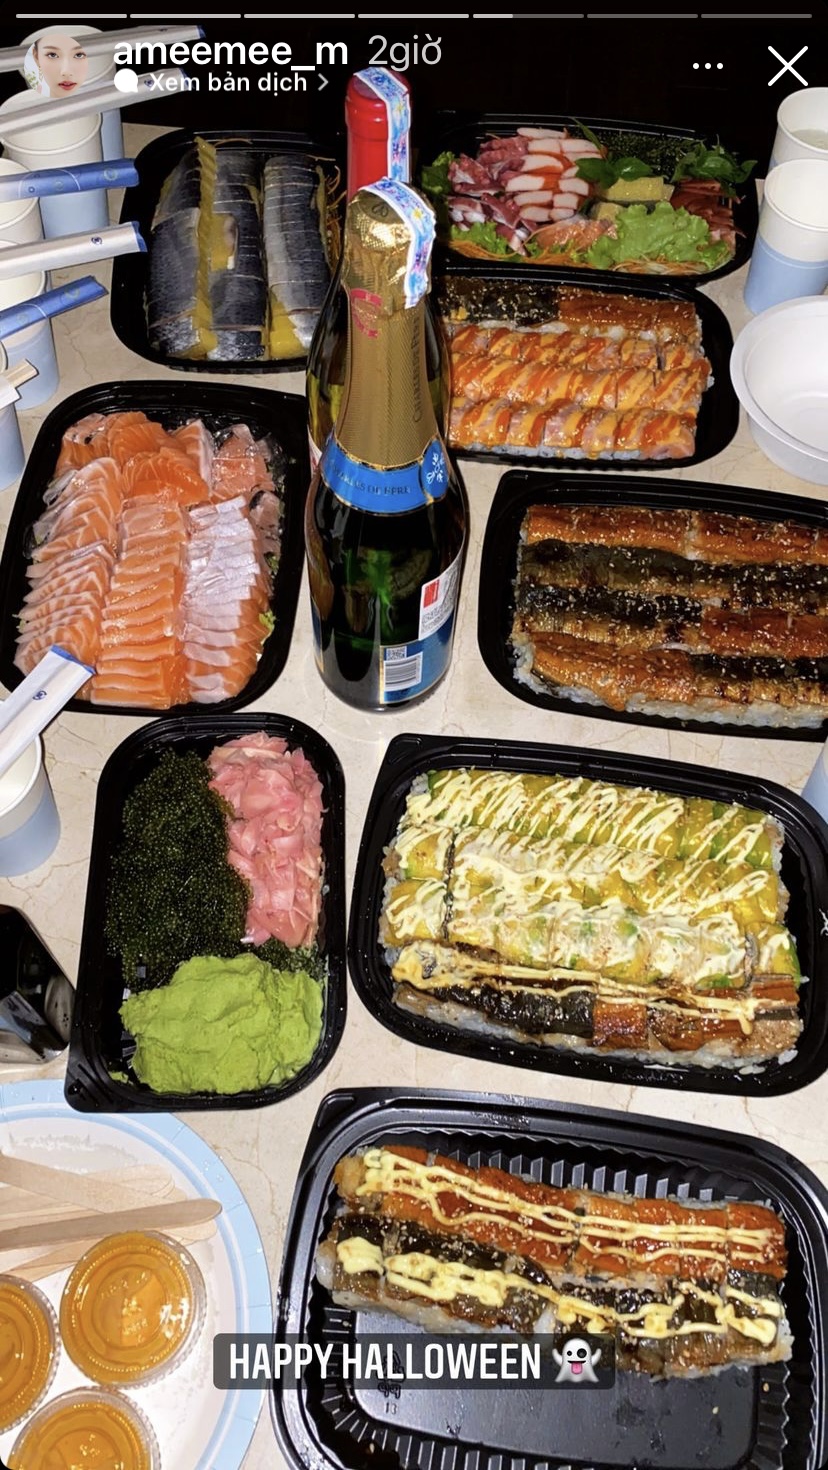 Bữa tối ngày Halloween của AMEE là một bàn đồ ăn Nhật như sashimi, sushi, cơm lươn... ngon ứa nước miếng.